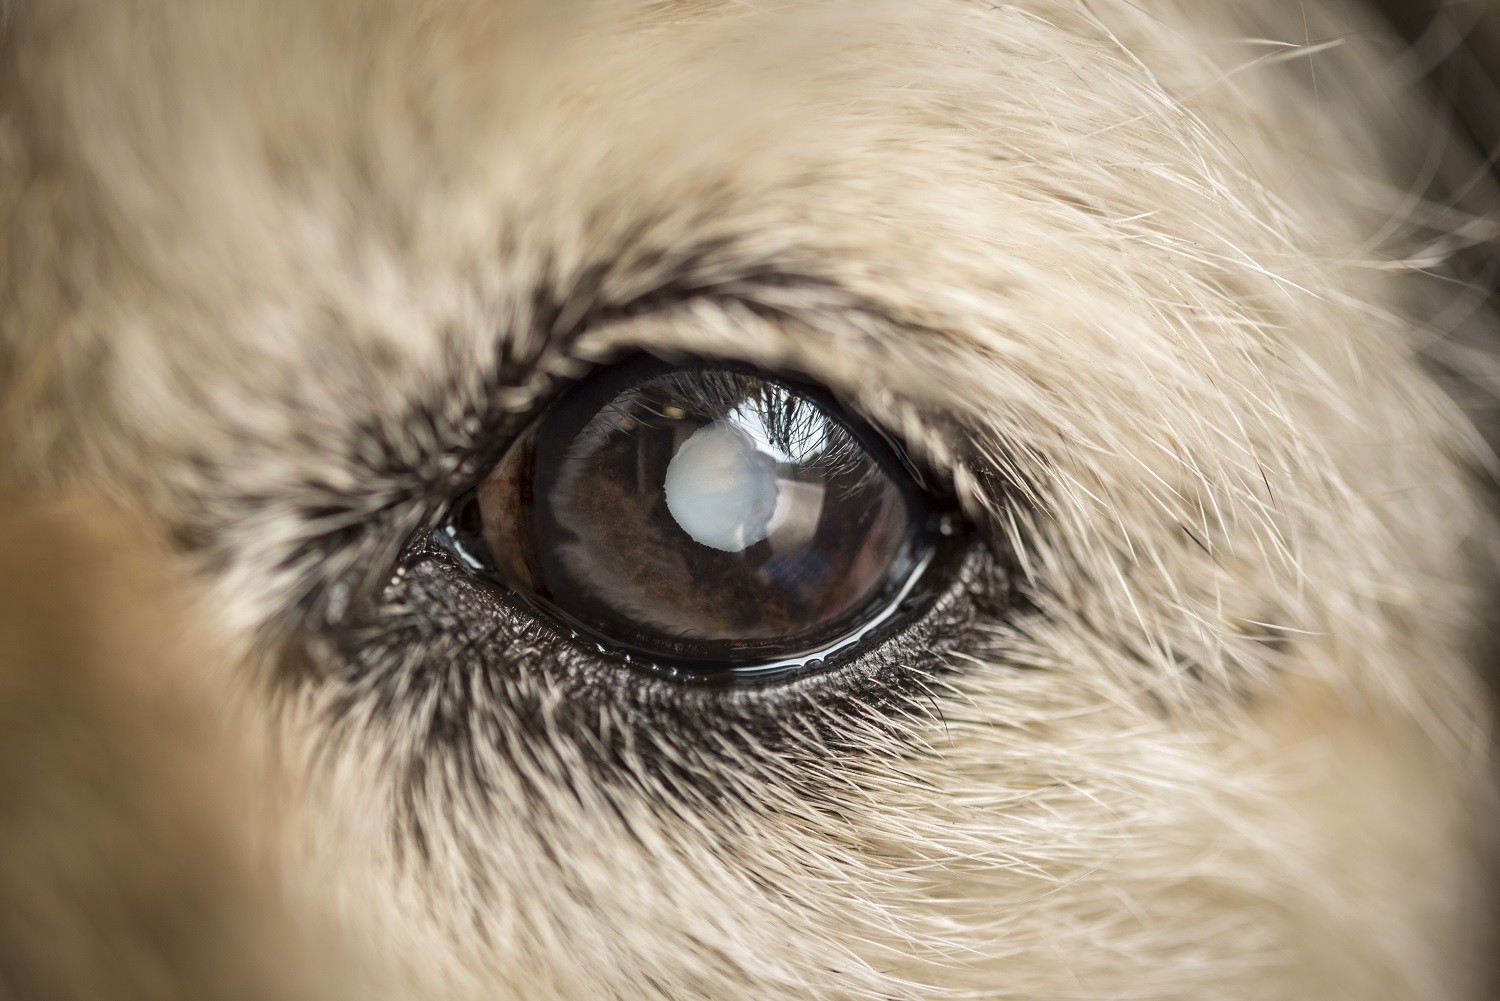 Caso a catarata não seja retirada por meio de cirurgia, pode provocar glaucoma e até perda ocular (Foto: Getty Images)